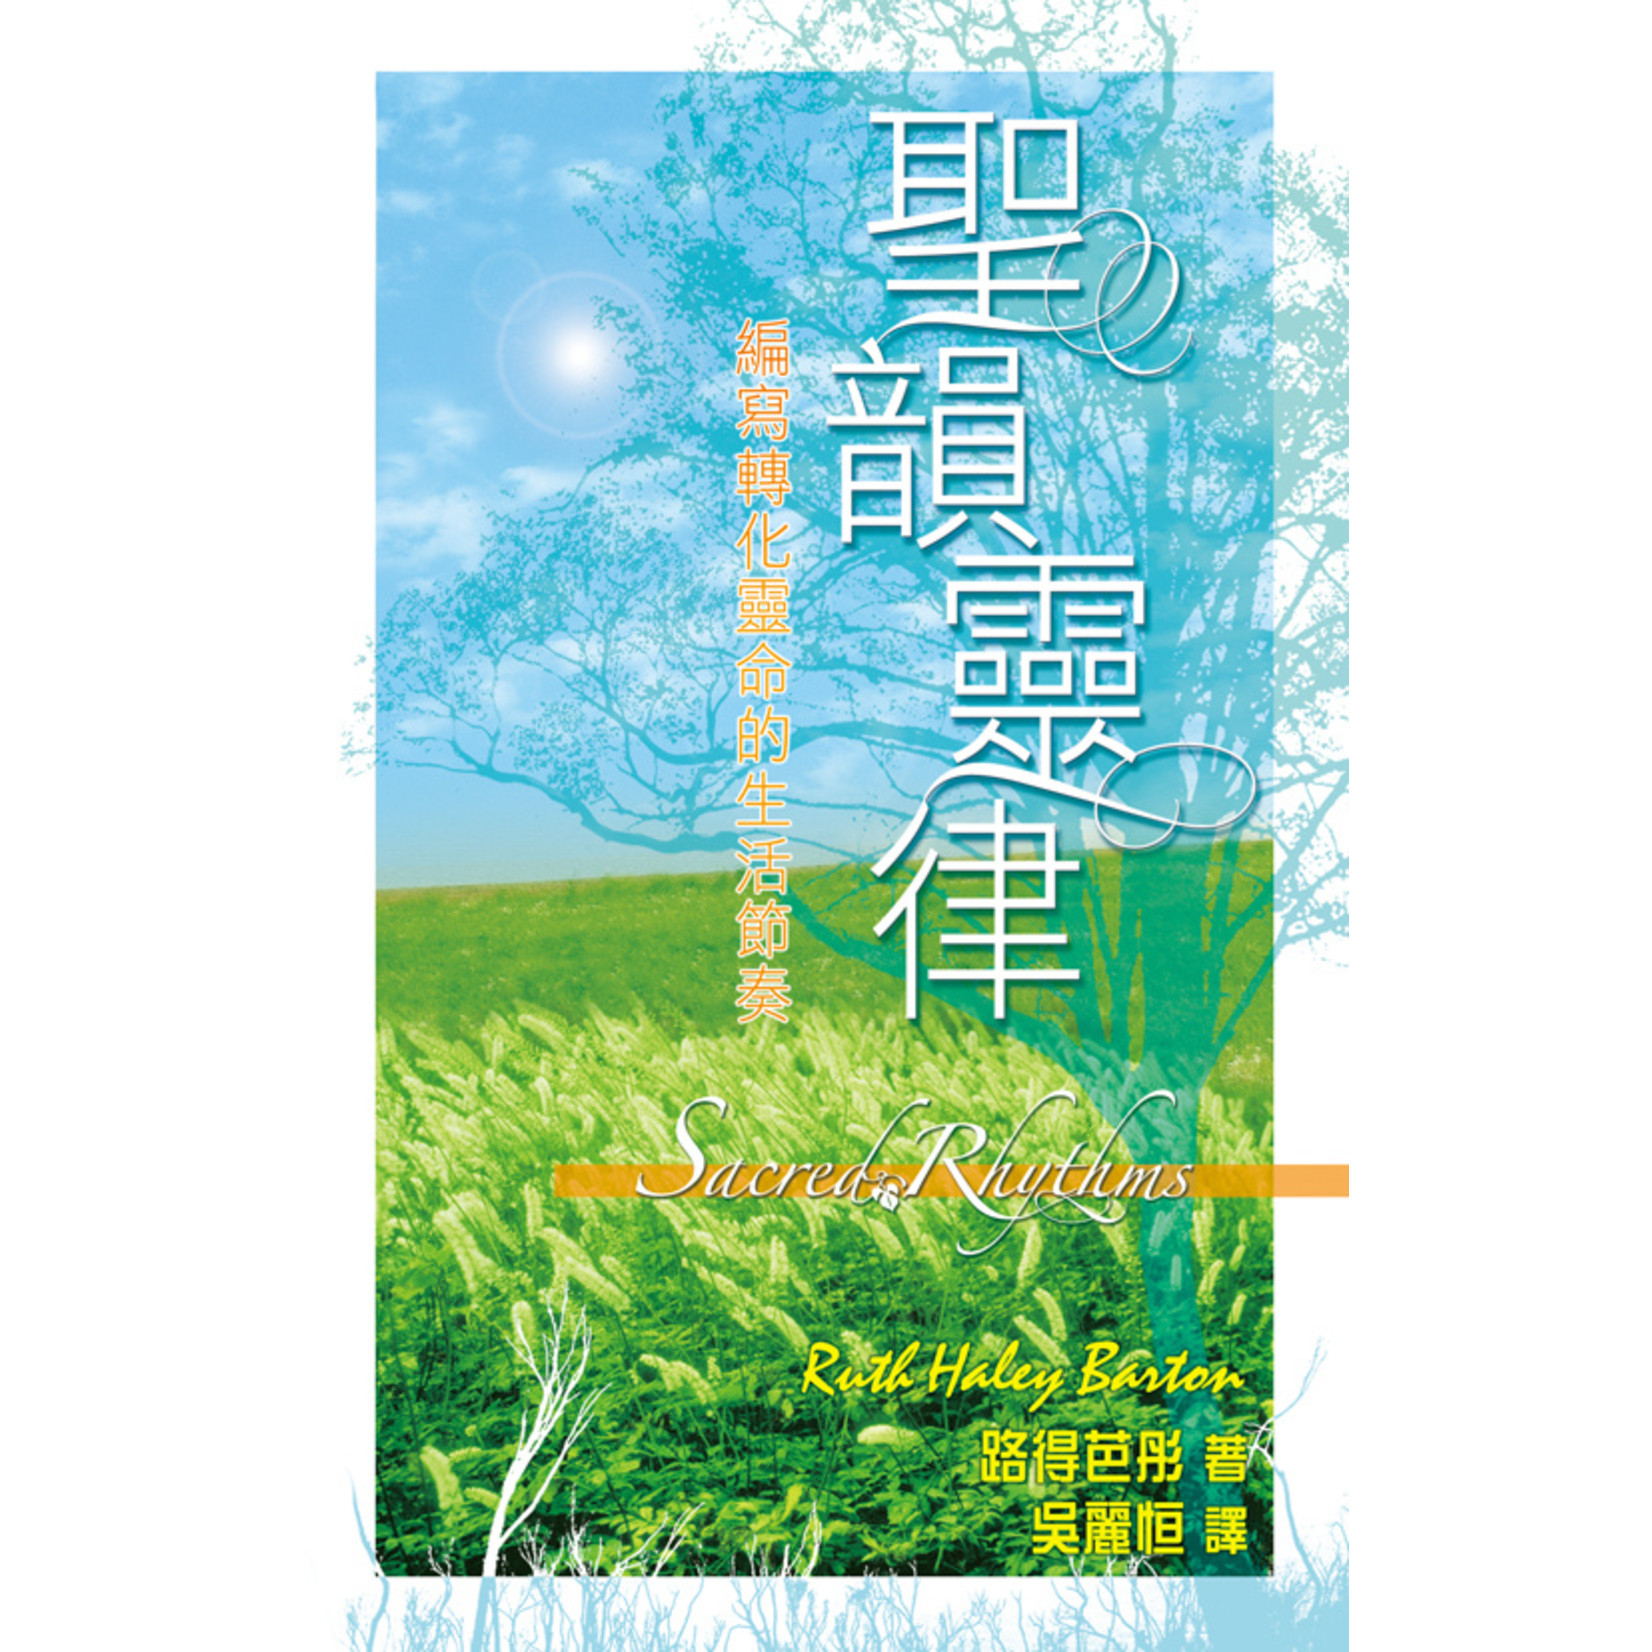 天道書樓 Tien Dao Publishing House 聖韻靈律：編寫轉化靈命的生活節奏 Sacred Rhythms